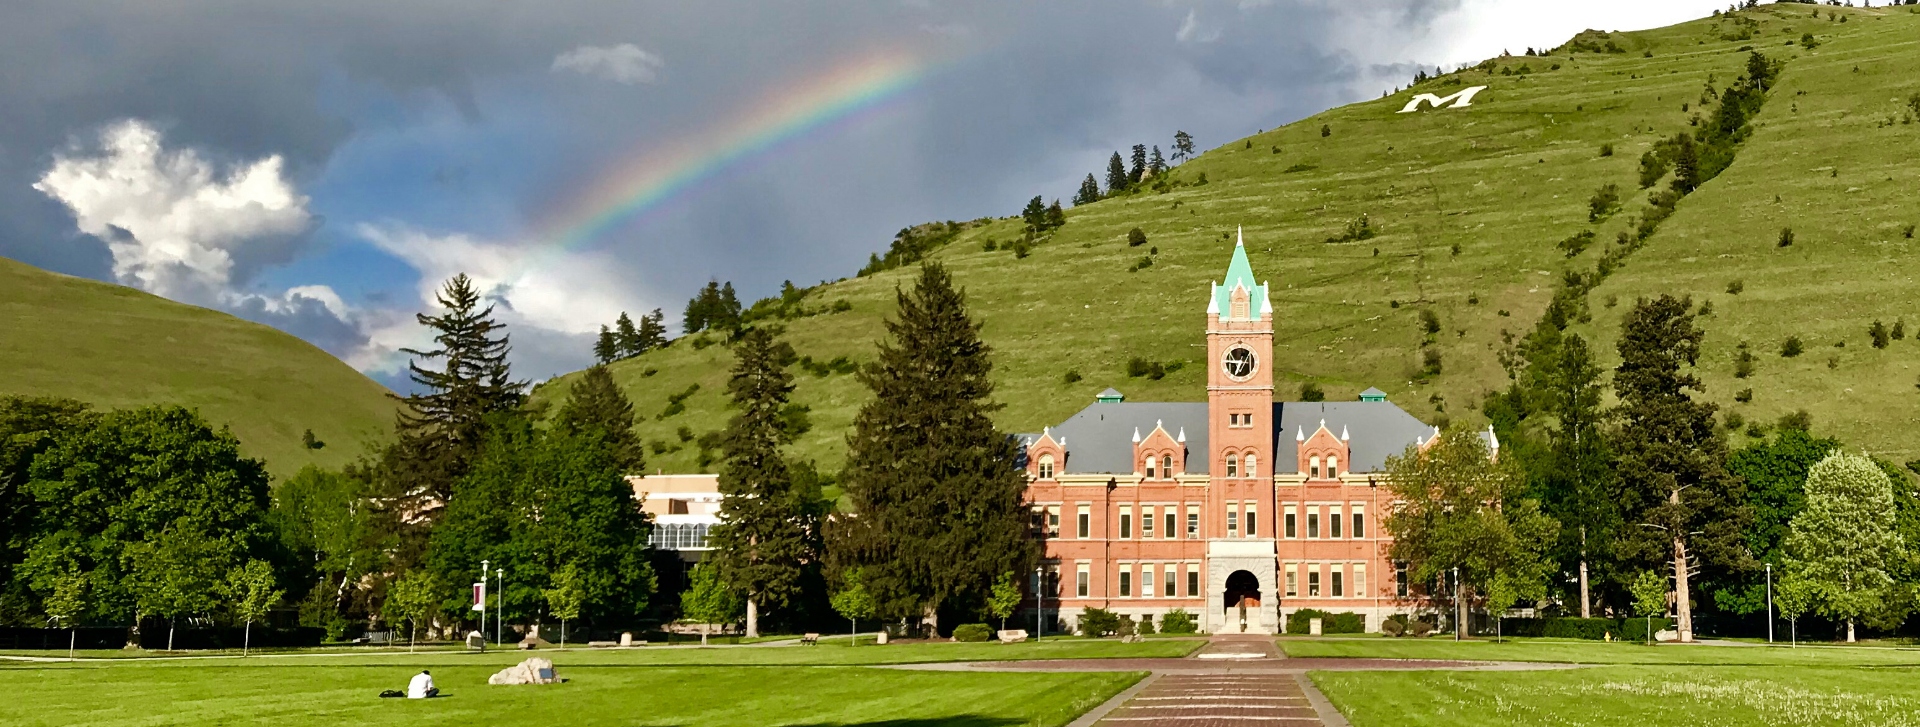 umt-rainbow-campus